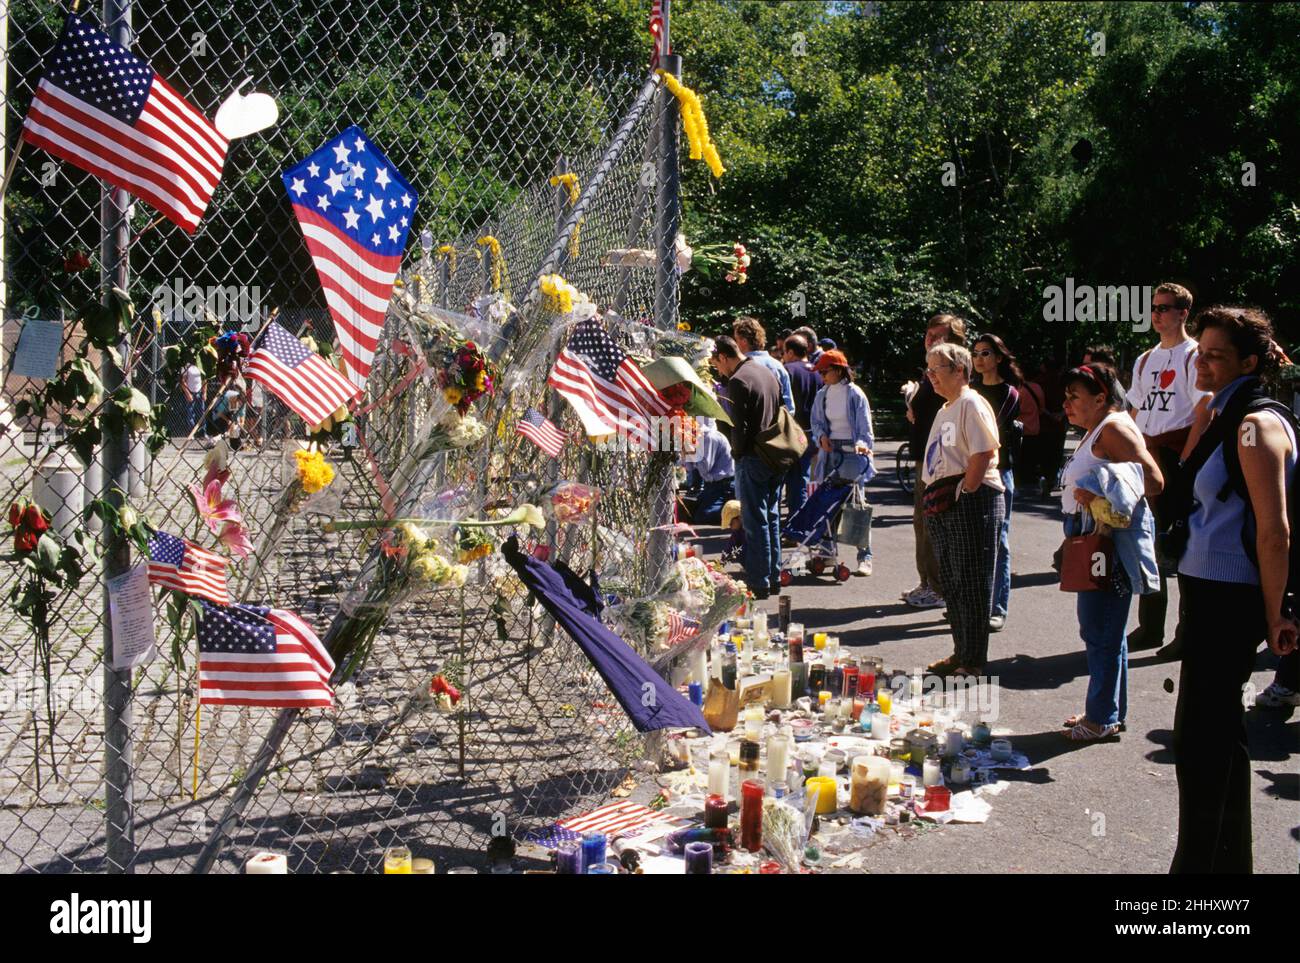 Etats unis New york compassion peuple américain 11th septembre tragédie Banque D'Images